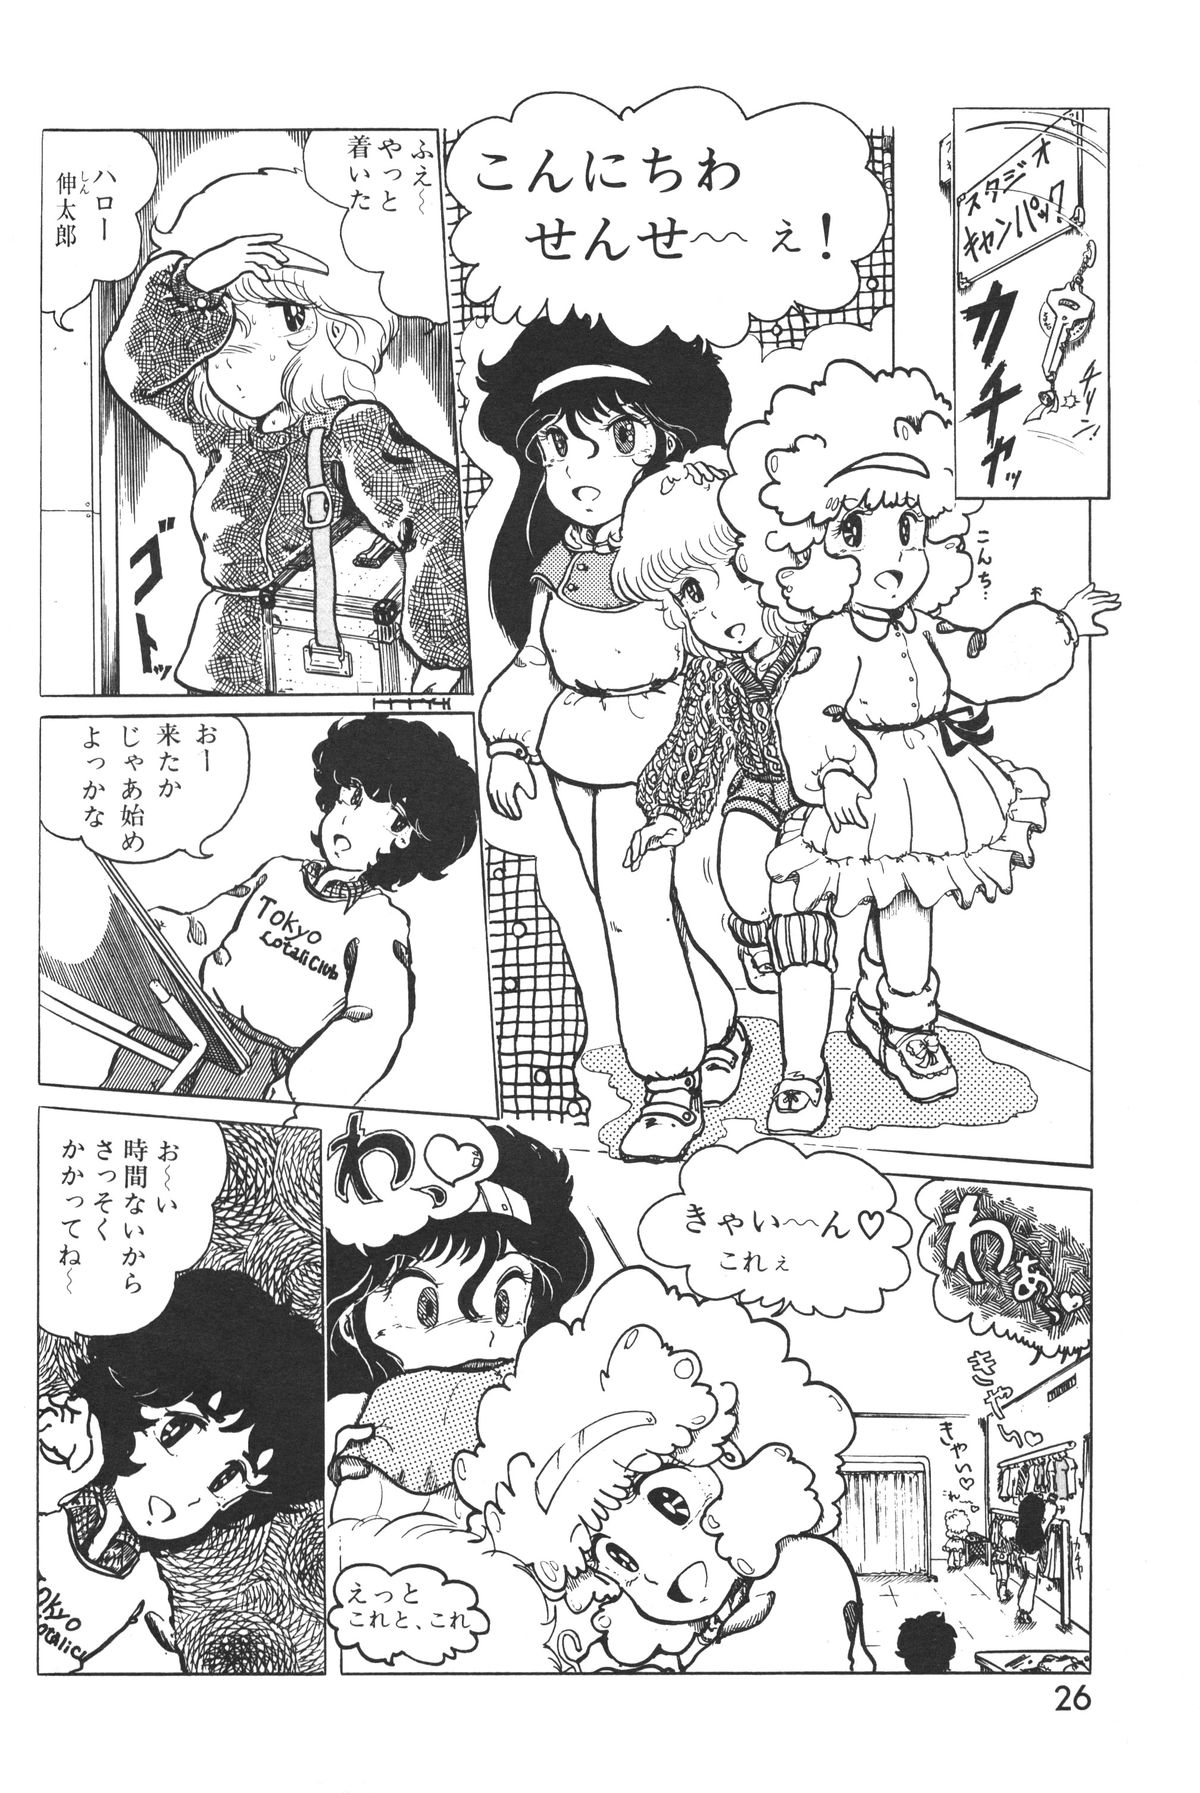 レモンピープル 1983年10月号 Vol.21